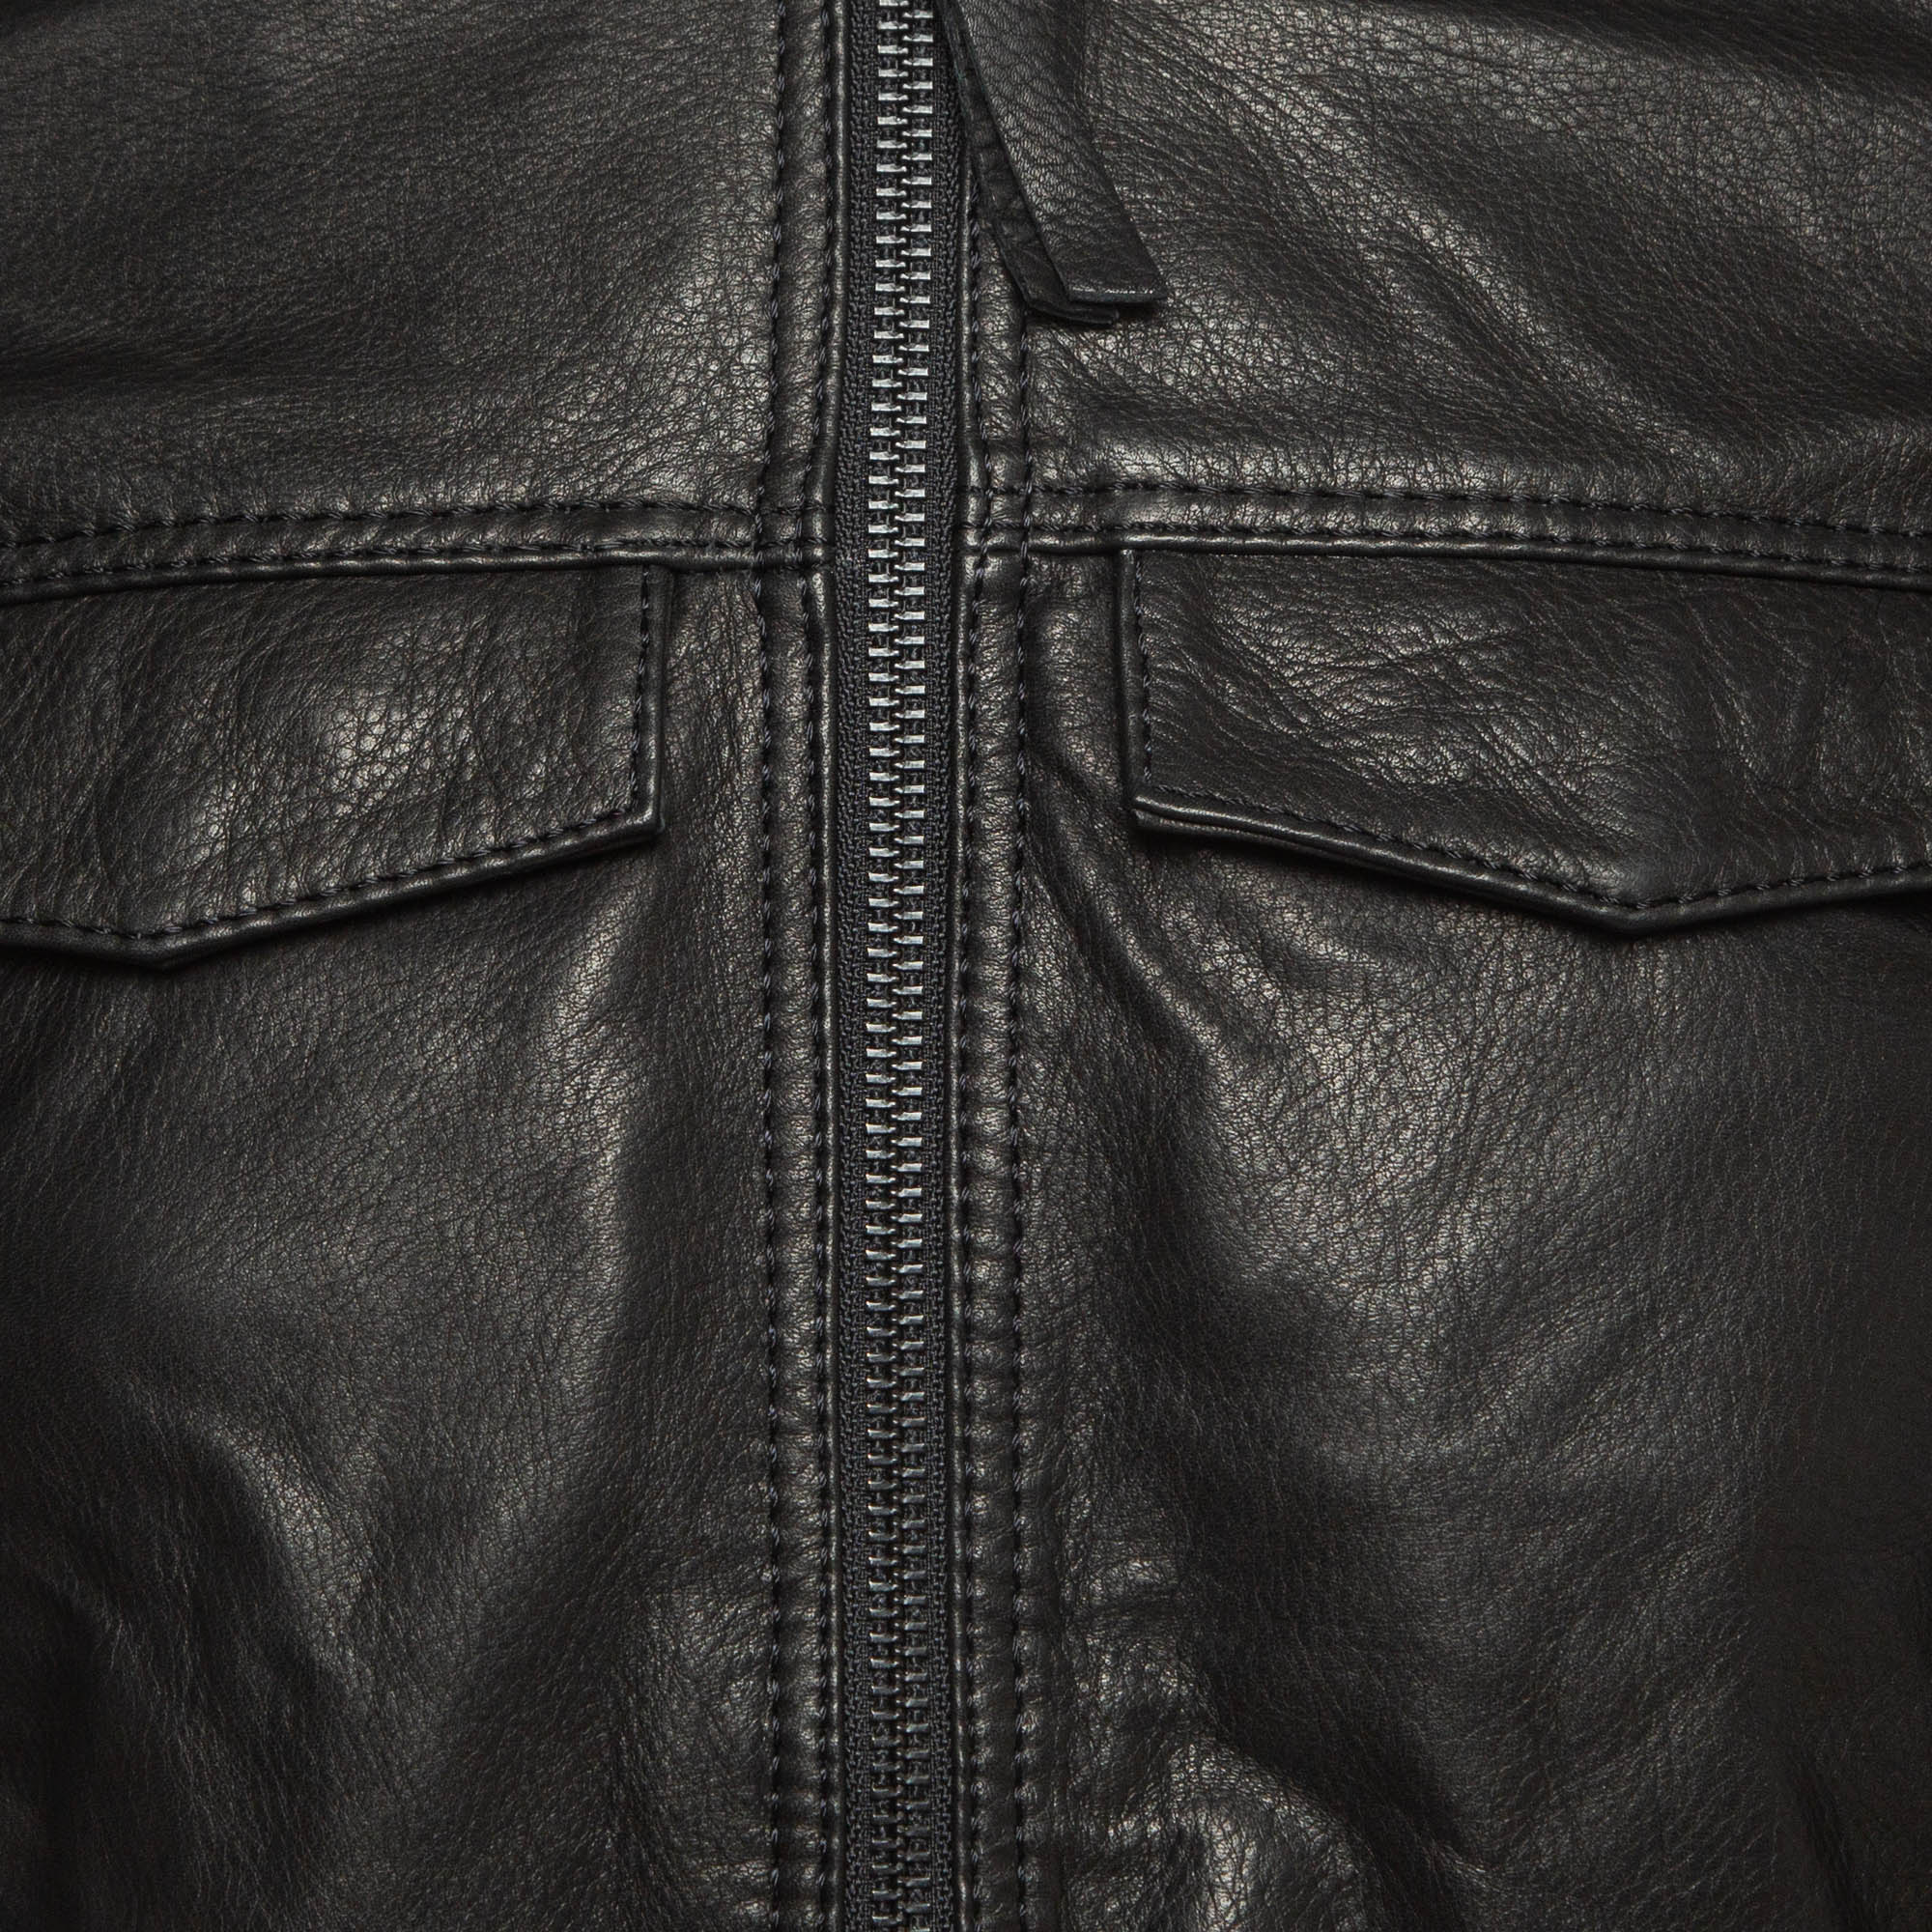 Zadig & Voltaire Black Leather Zip Front Jacket S